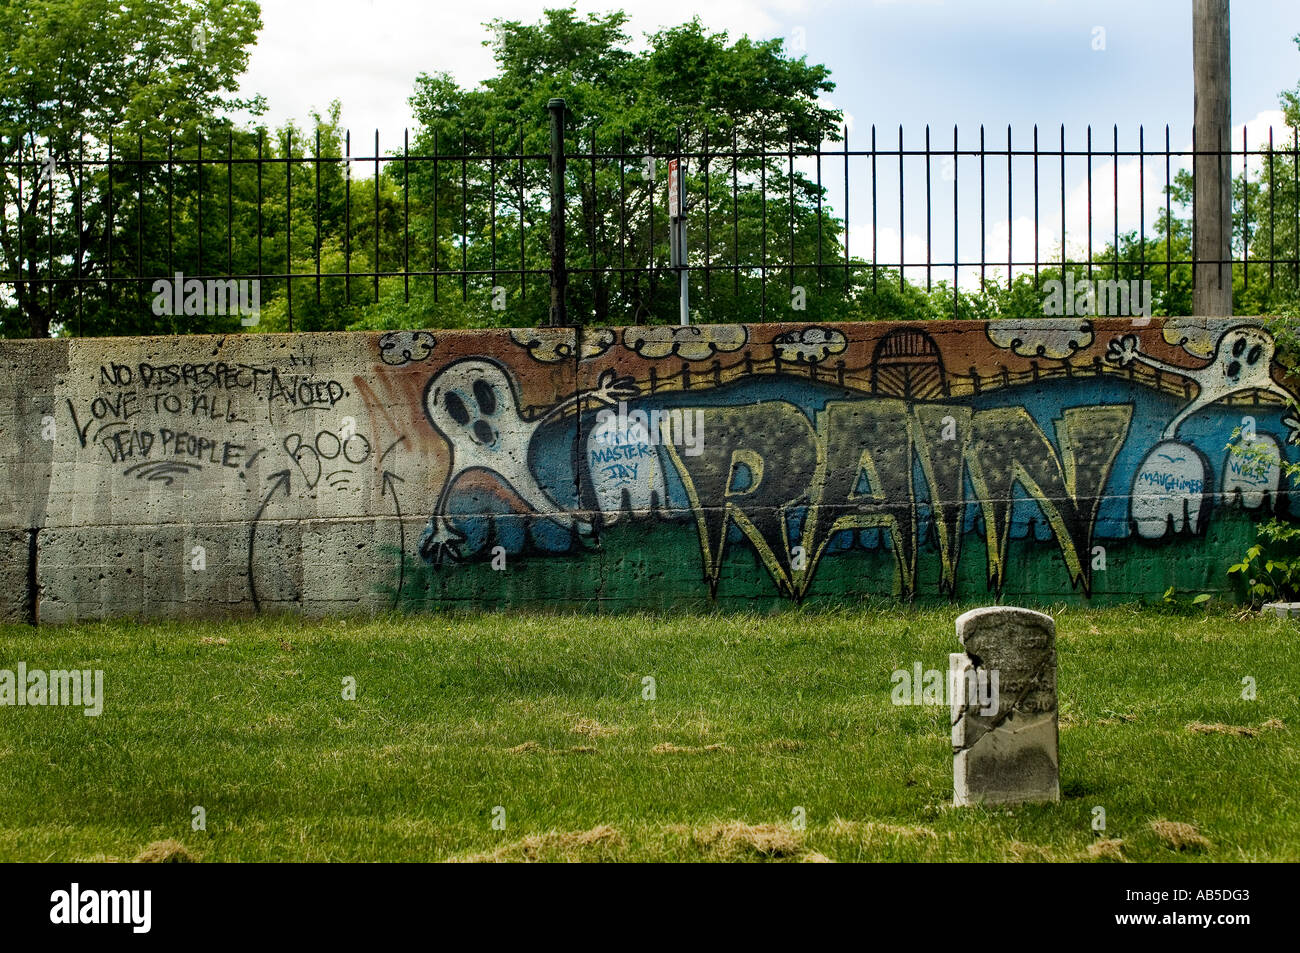 graffiti-on-a-wall-in-a-cemetery-AB5DG3.jpg